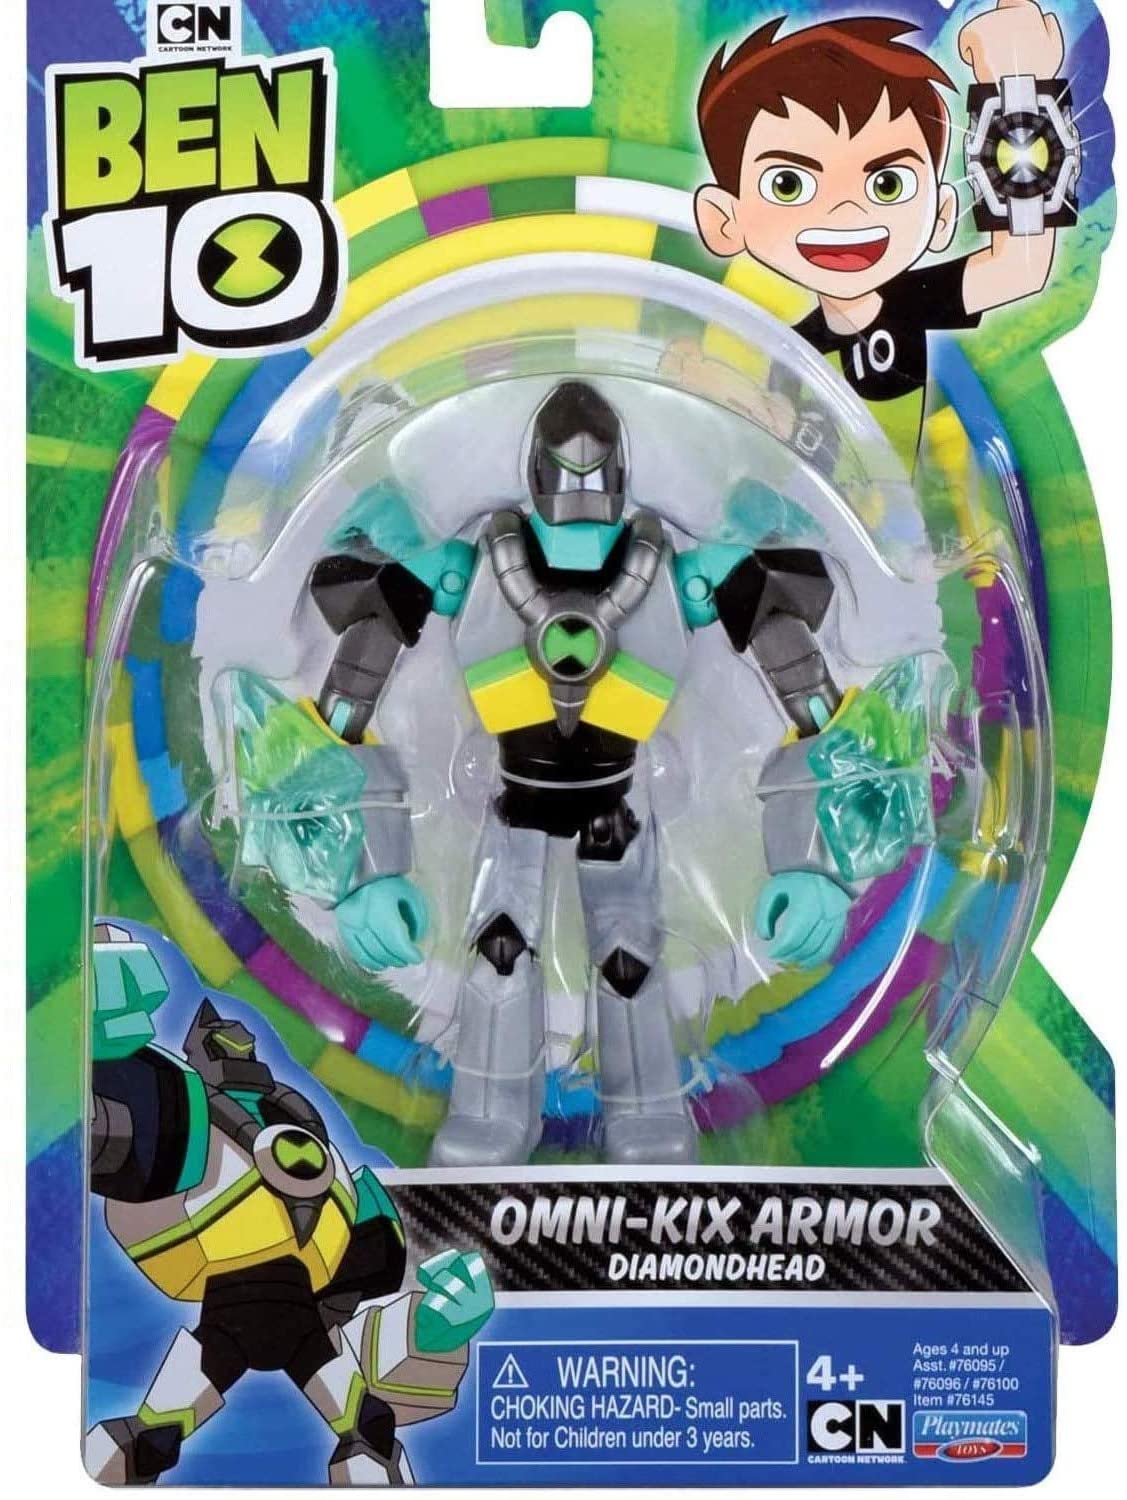 Ben 10 Action Figure Diamondhead Armor